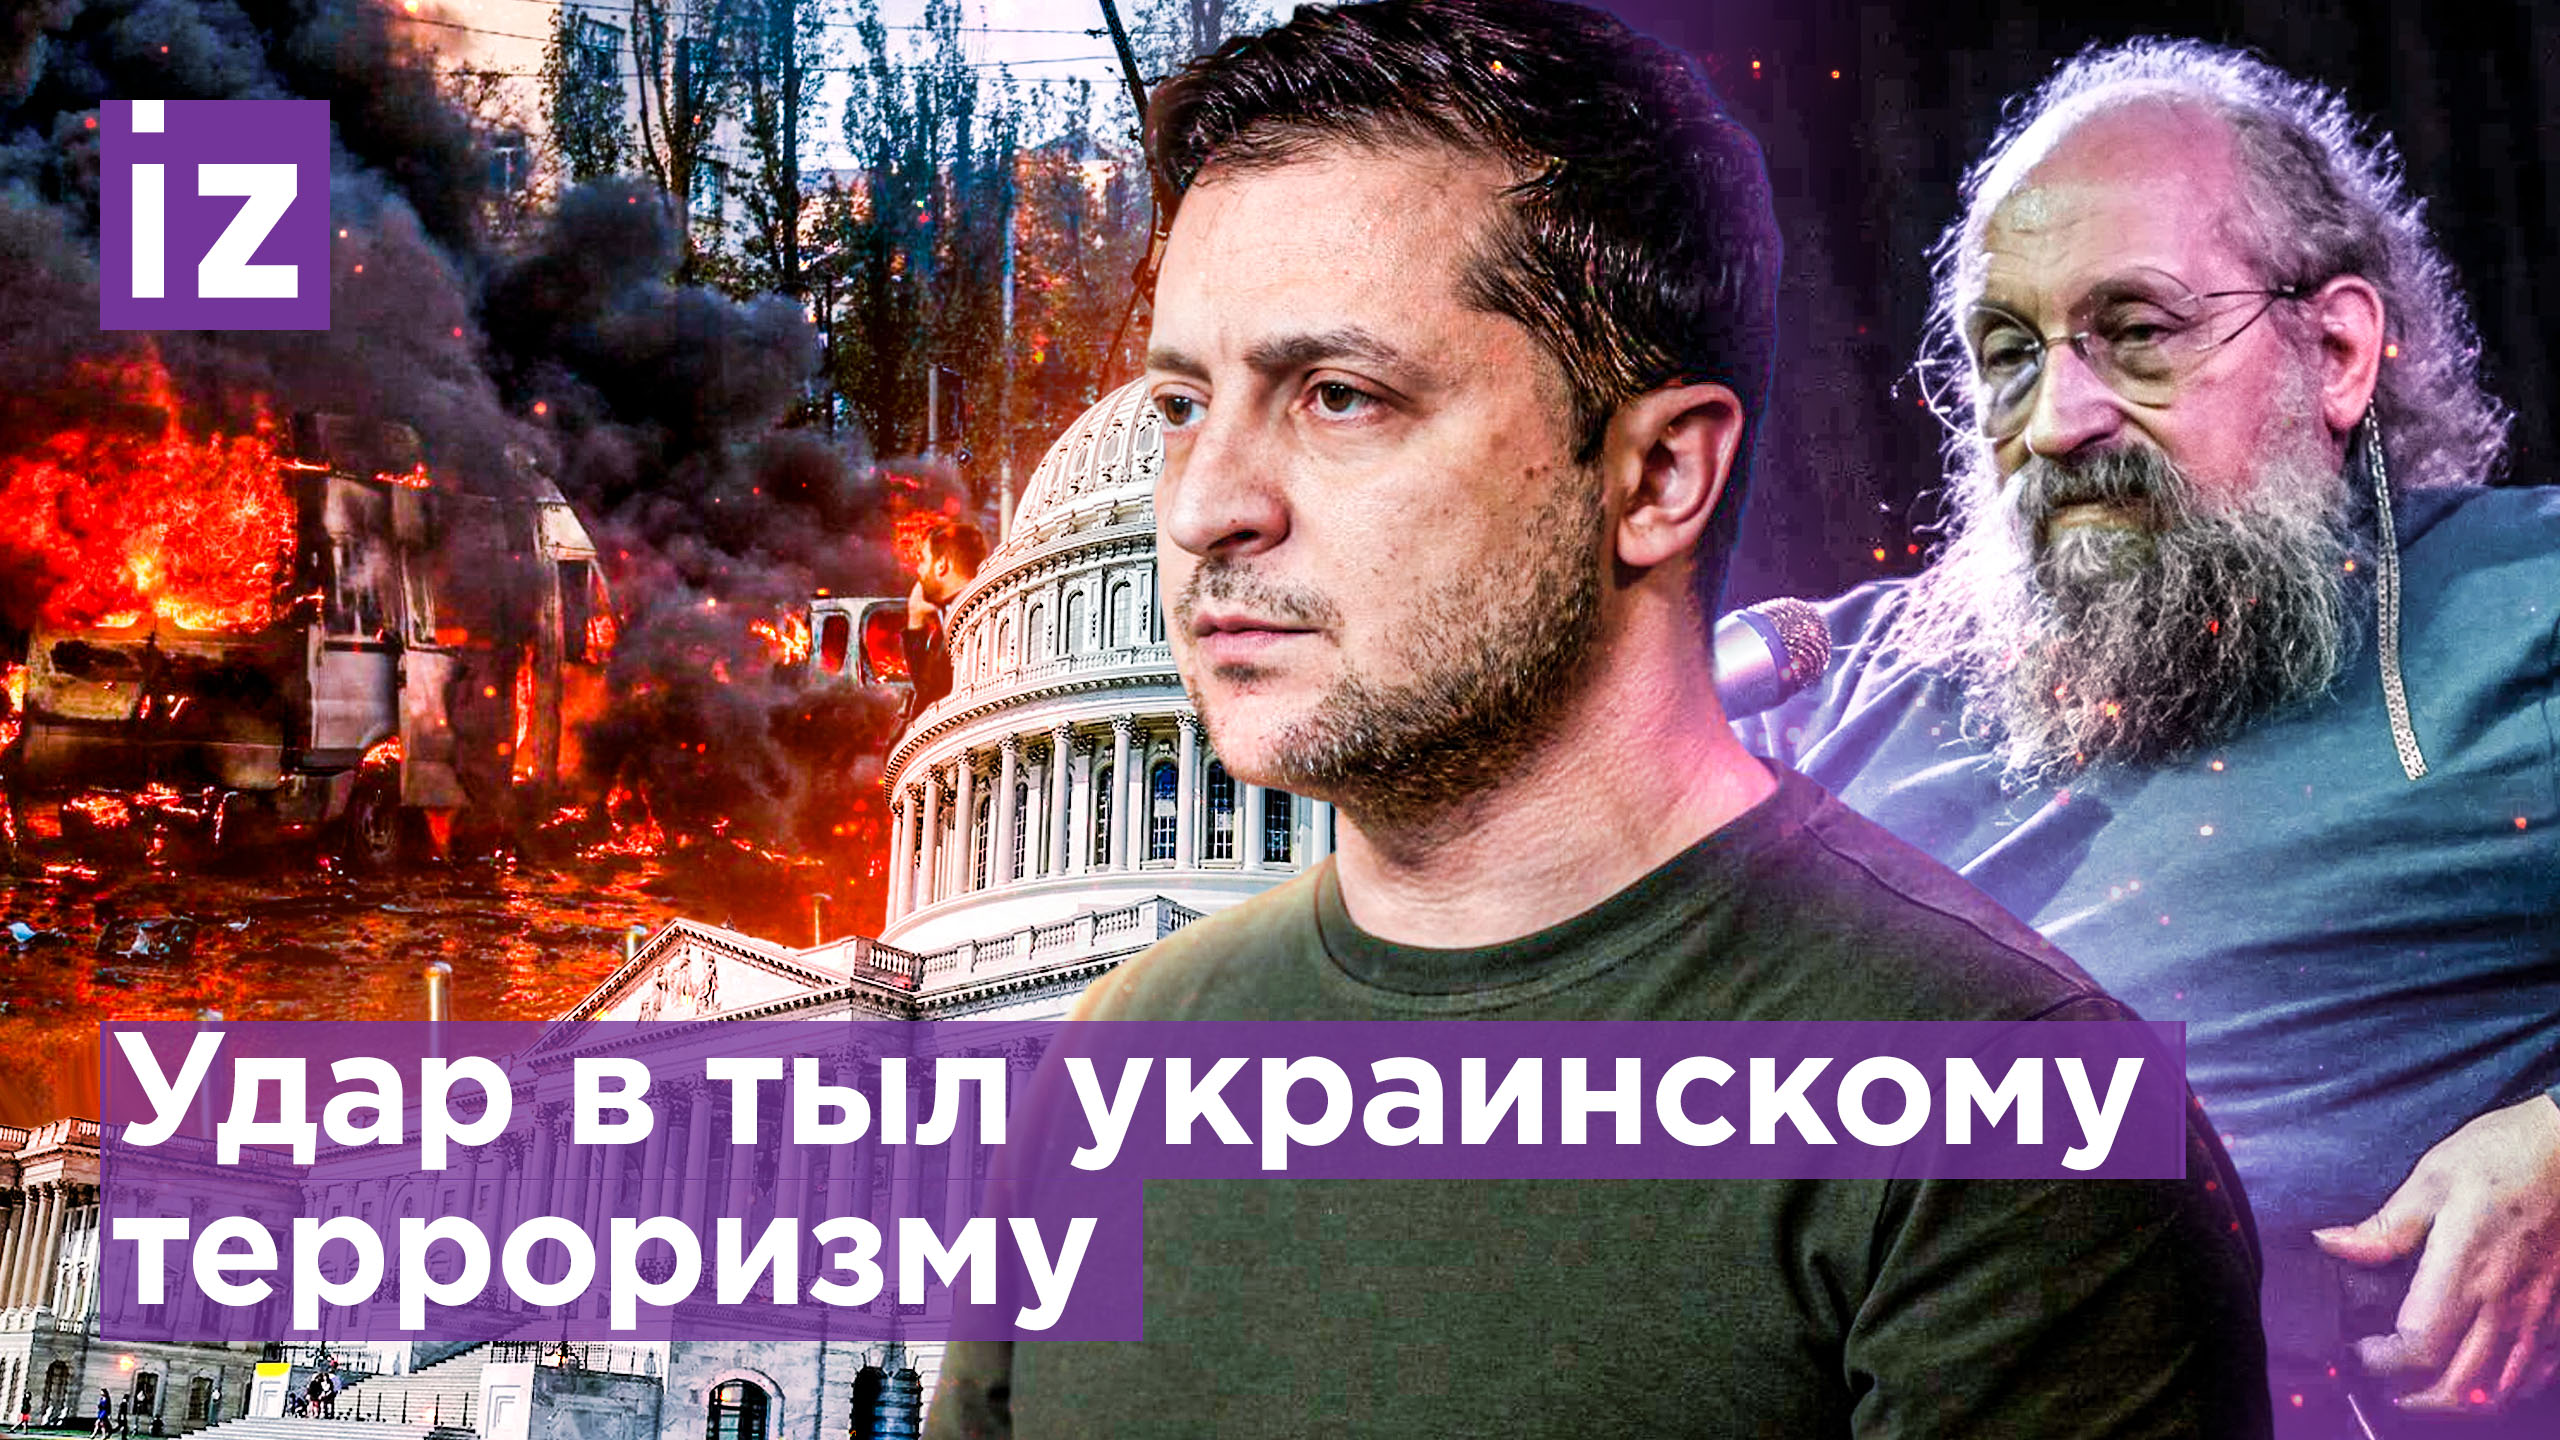 Удар в тыл киевскому терроризму — не месть / Газ рассорил ЕС / ОТКРЫТЫМ ТЕКСТОМ с Вассерманом